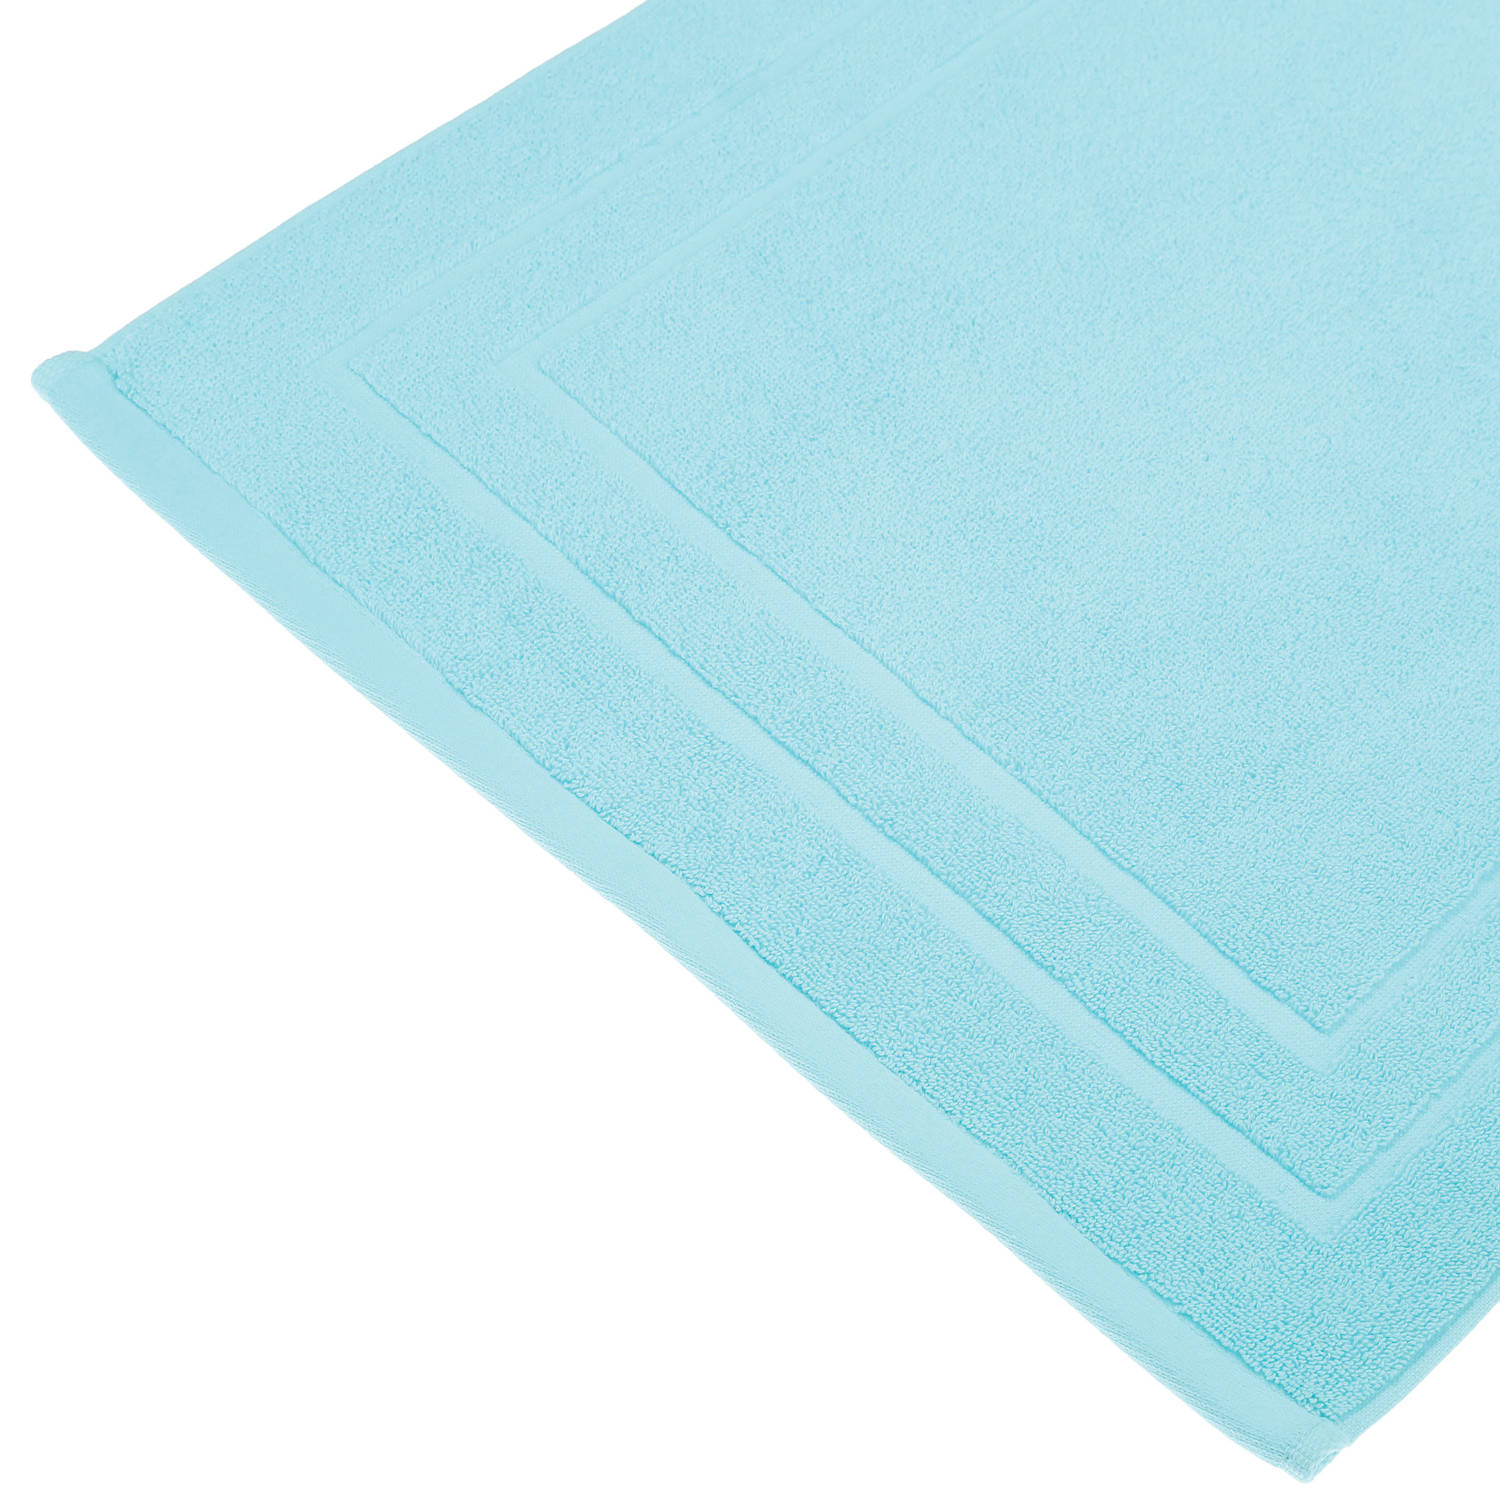 Badkamerkleed/badmat voor op de vloer aqua blauw 50 x 70 cm - Badmatjes